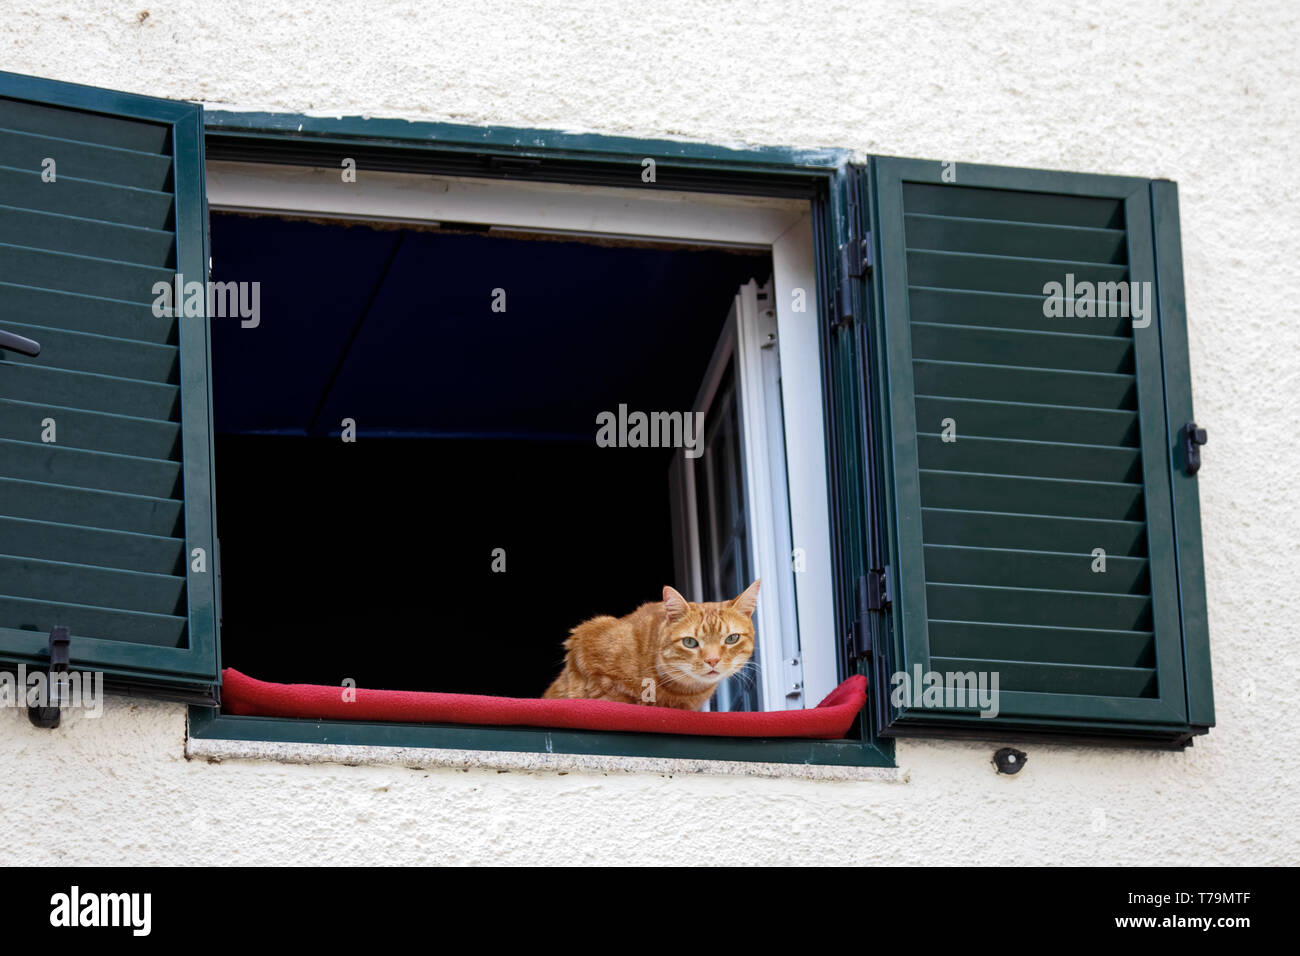 Orange tabby Katze, oberen Fenster, direkt am Ufer, rote Decke, grünen Fensterläden, Haustier, Tier, Katze, PR, horizontal Stockfoto